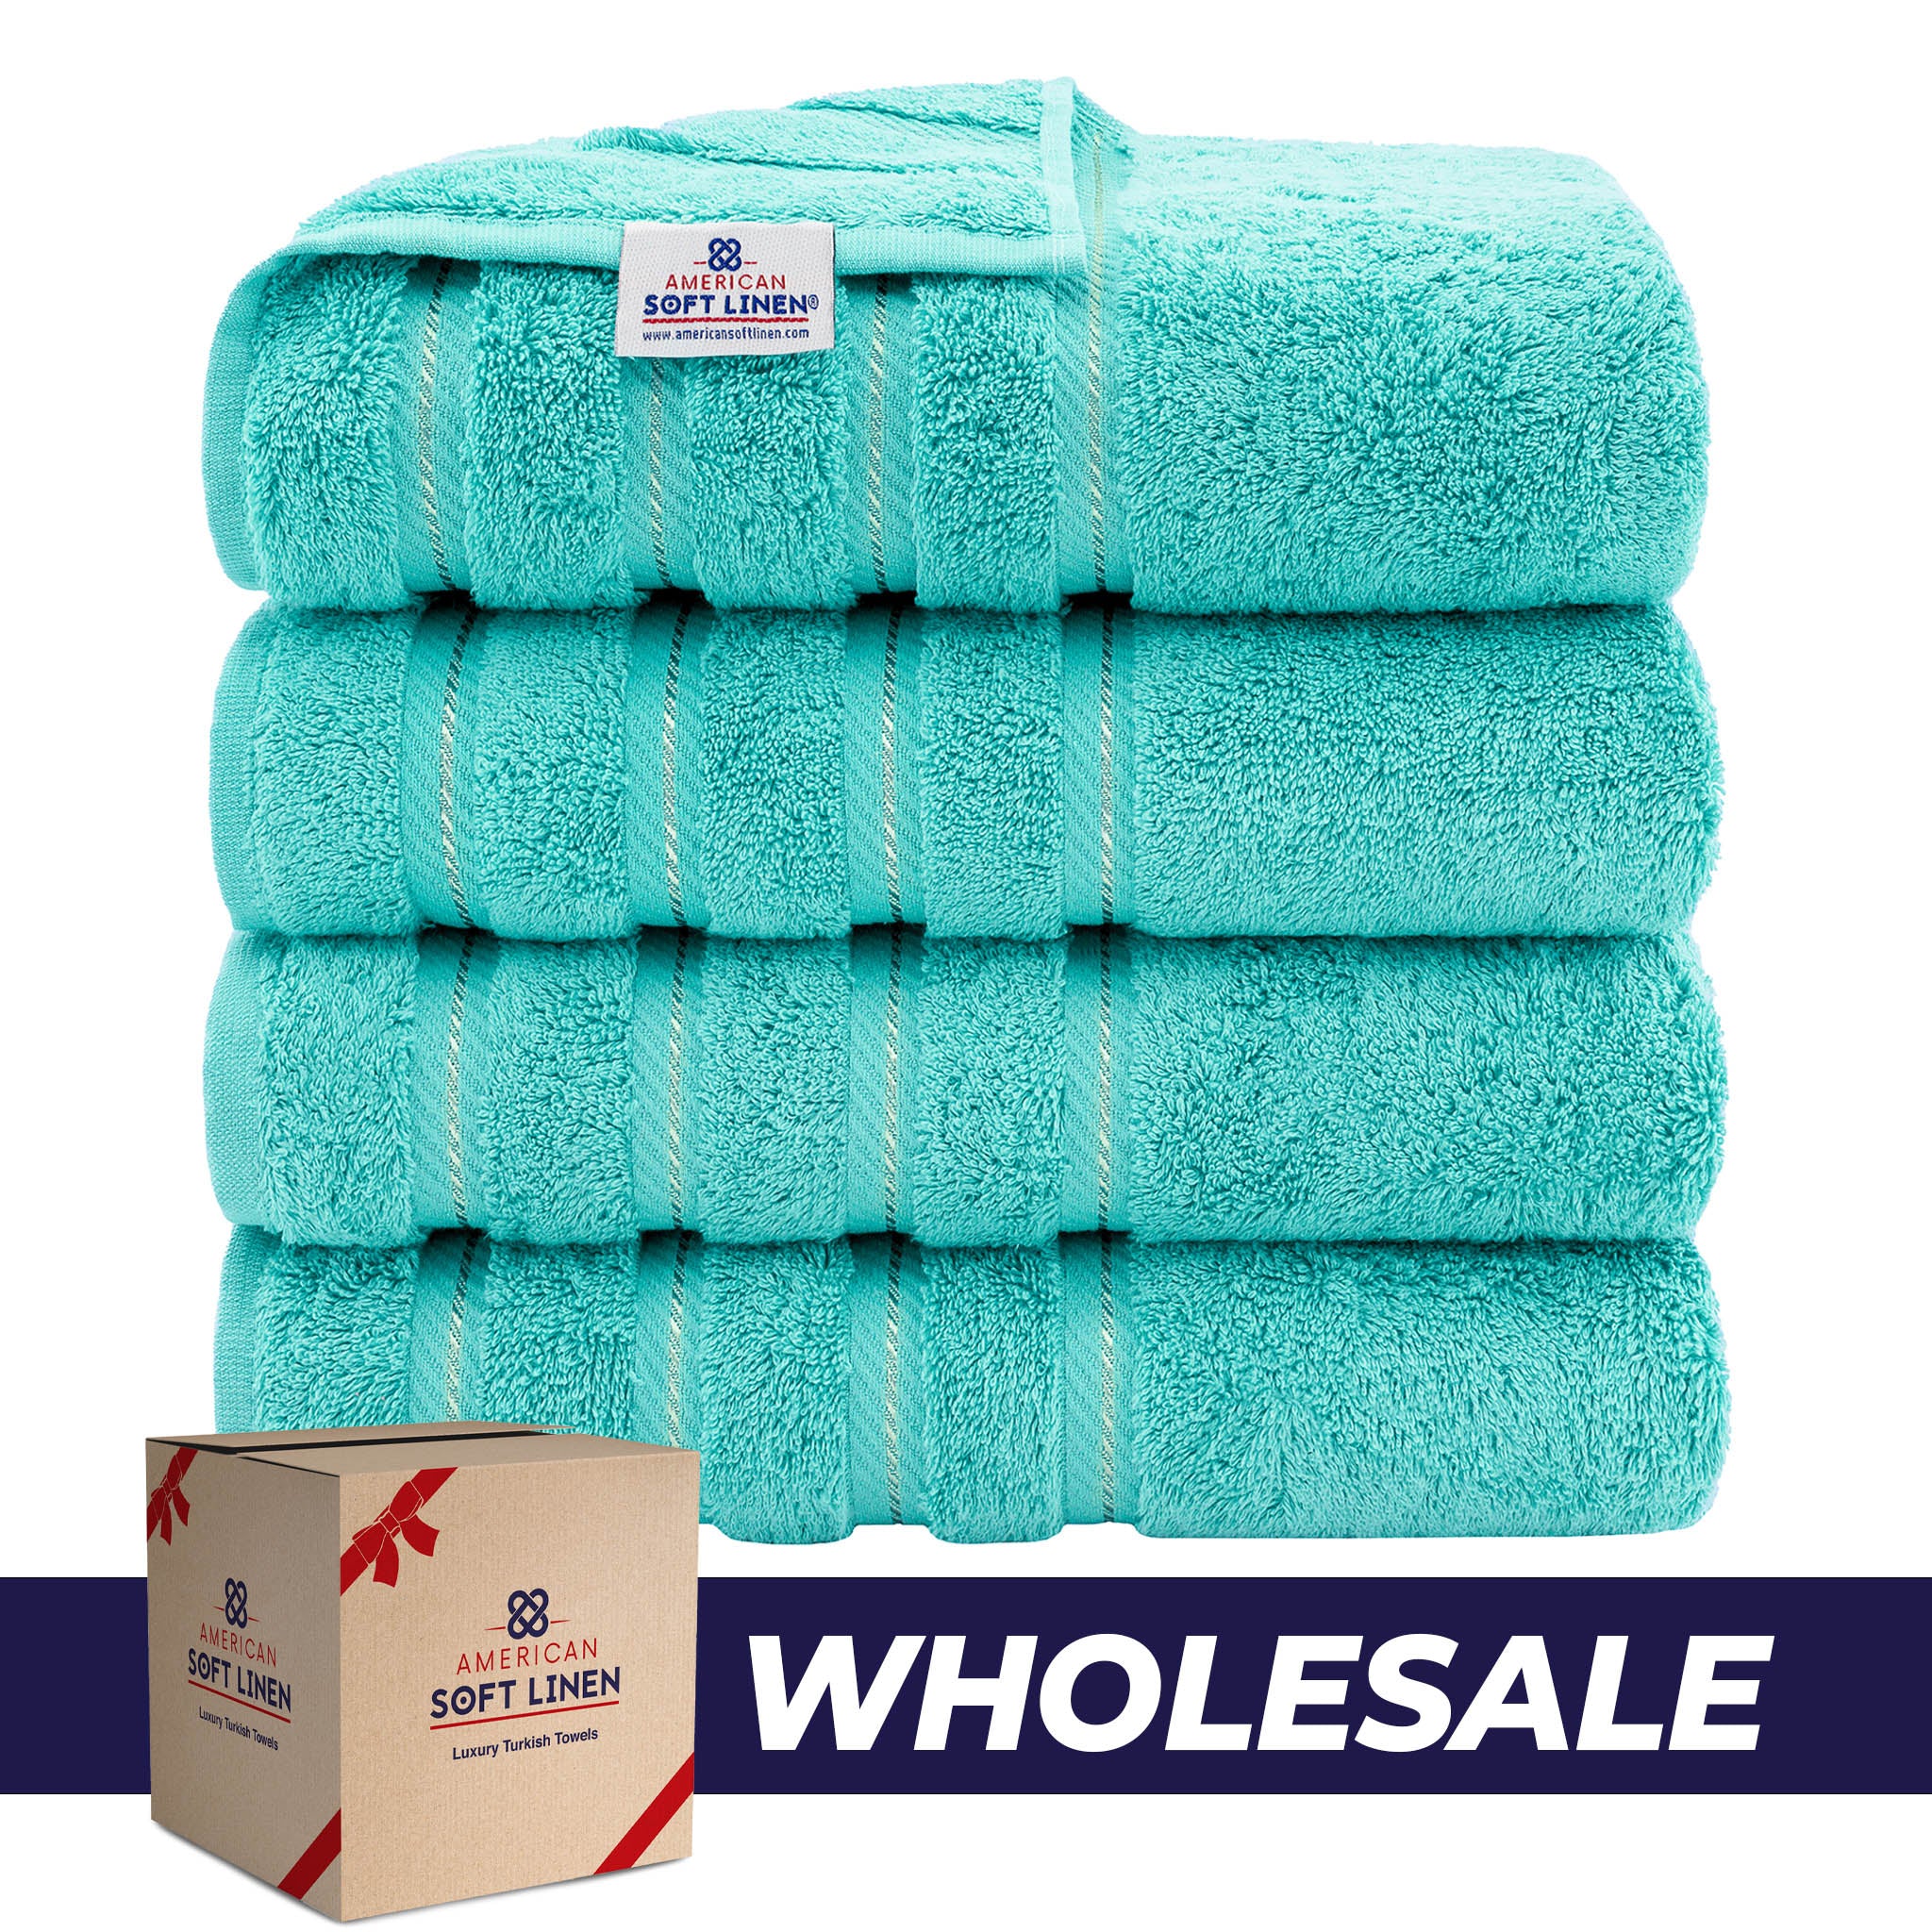 American Soft Linen 100% Turkish Cotton 4 Pack Bath Towel Set Wholesale turquoise-blue-0